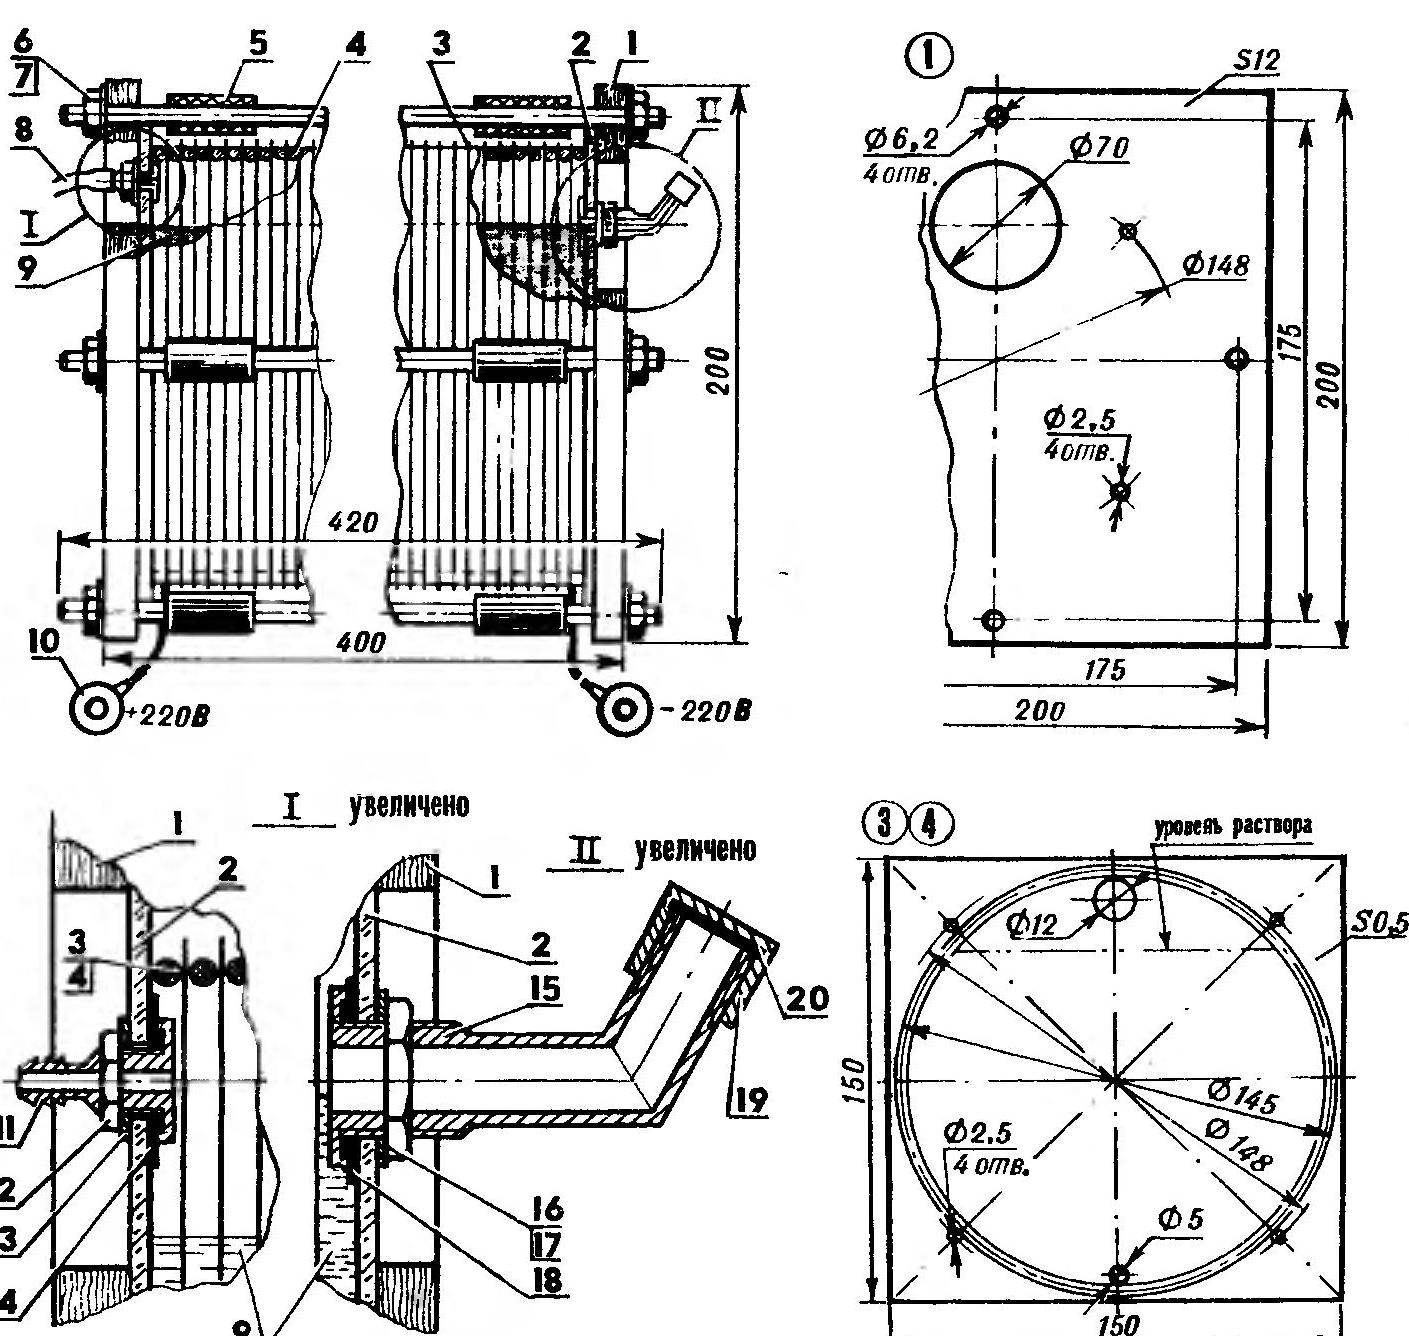 Fig.2. The electrolyzer (